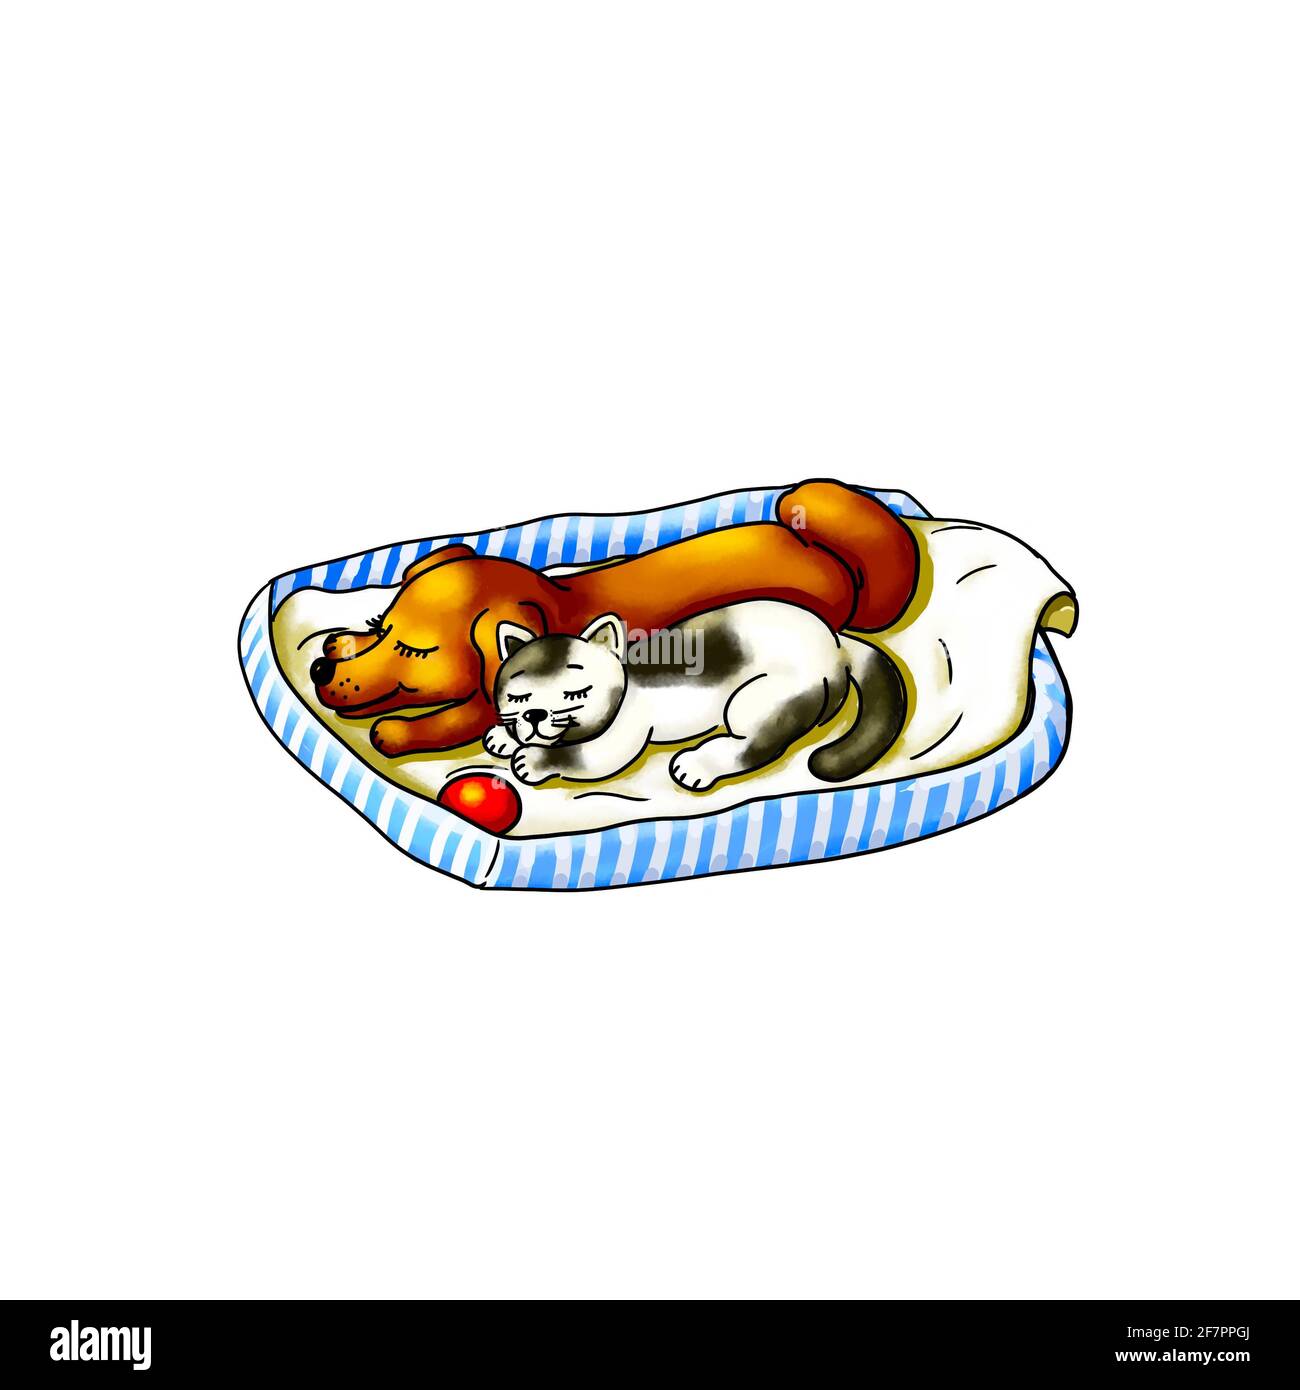 Hund Welpen Baby Tiere Haustier Katze Kätzchen Baby Tier liegen Im Hundekorb auf der Decke und schlafen zusammen kuscheln Ruhe niedlichen Tier Boarding Spielzeug Ball Stockfoto